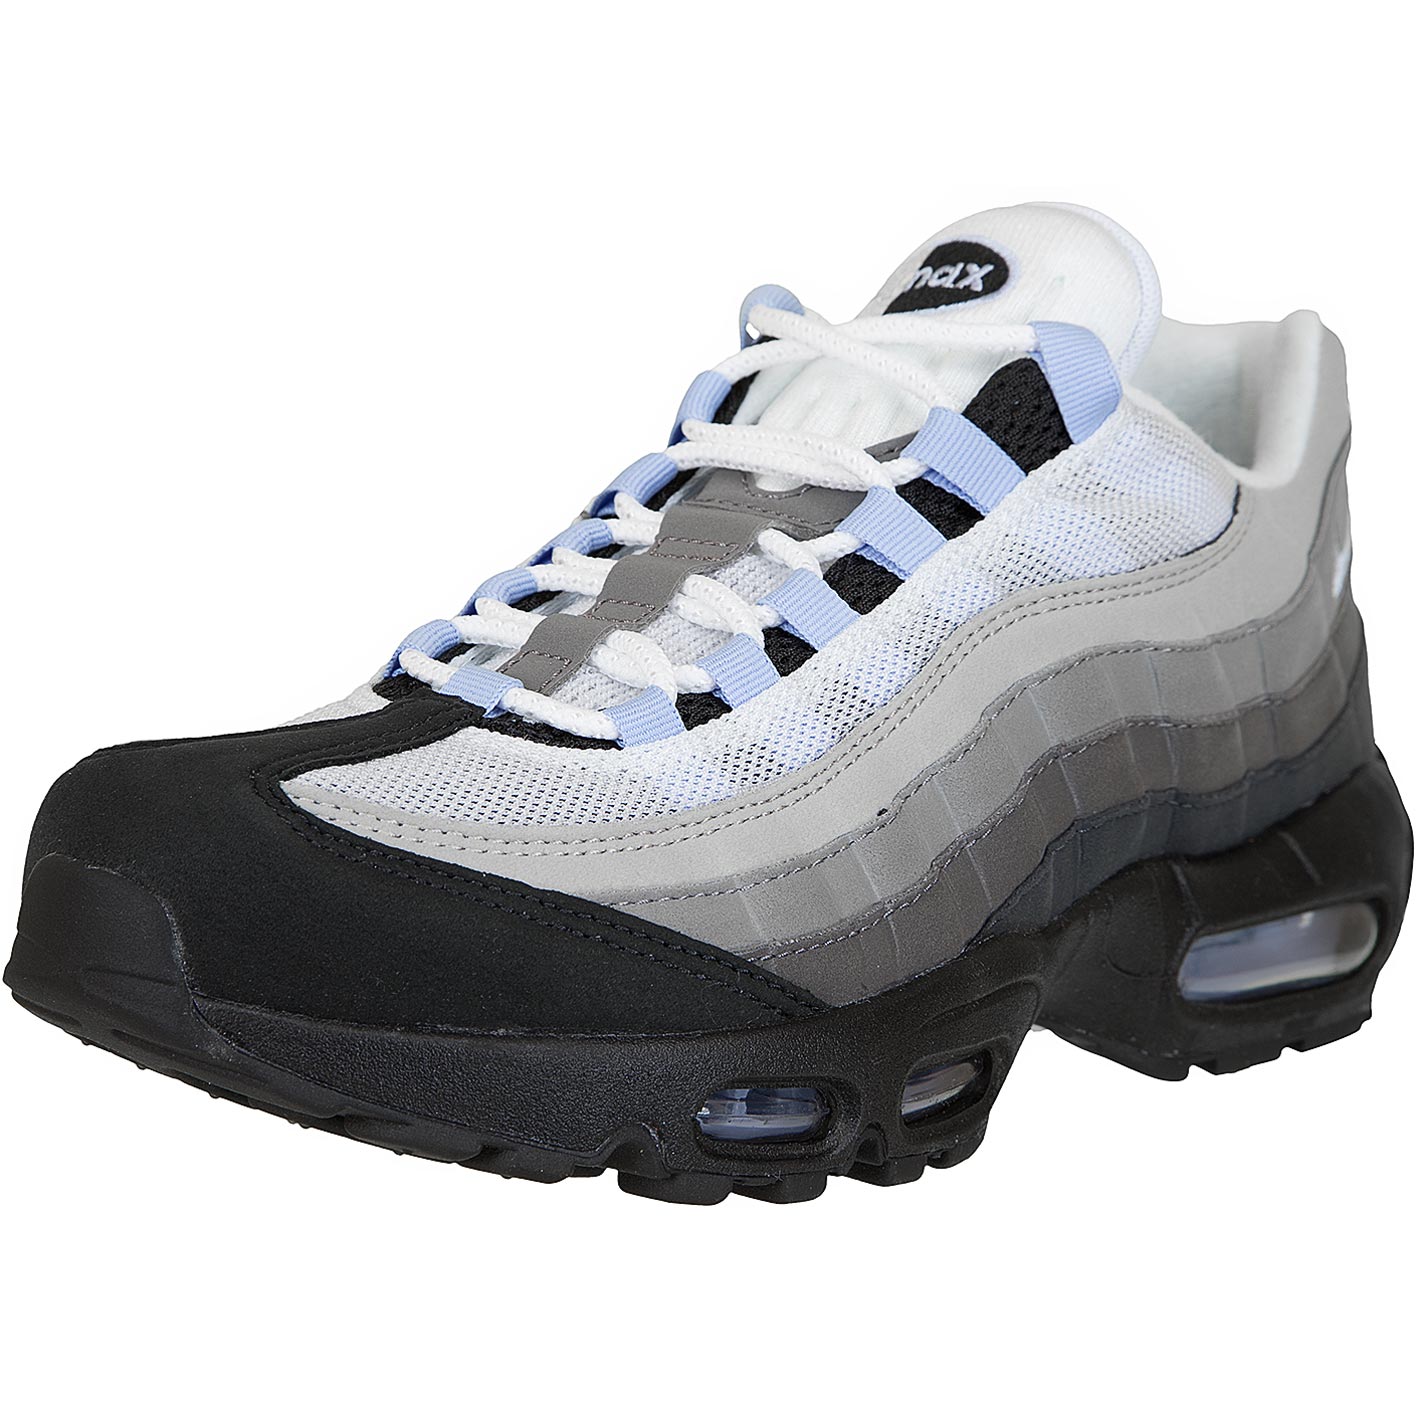 nike air max 96 schwarz grau Schuhe, Mode und Accessoires online kaufen